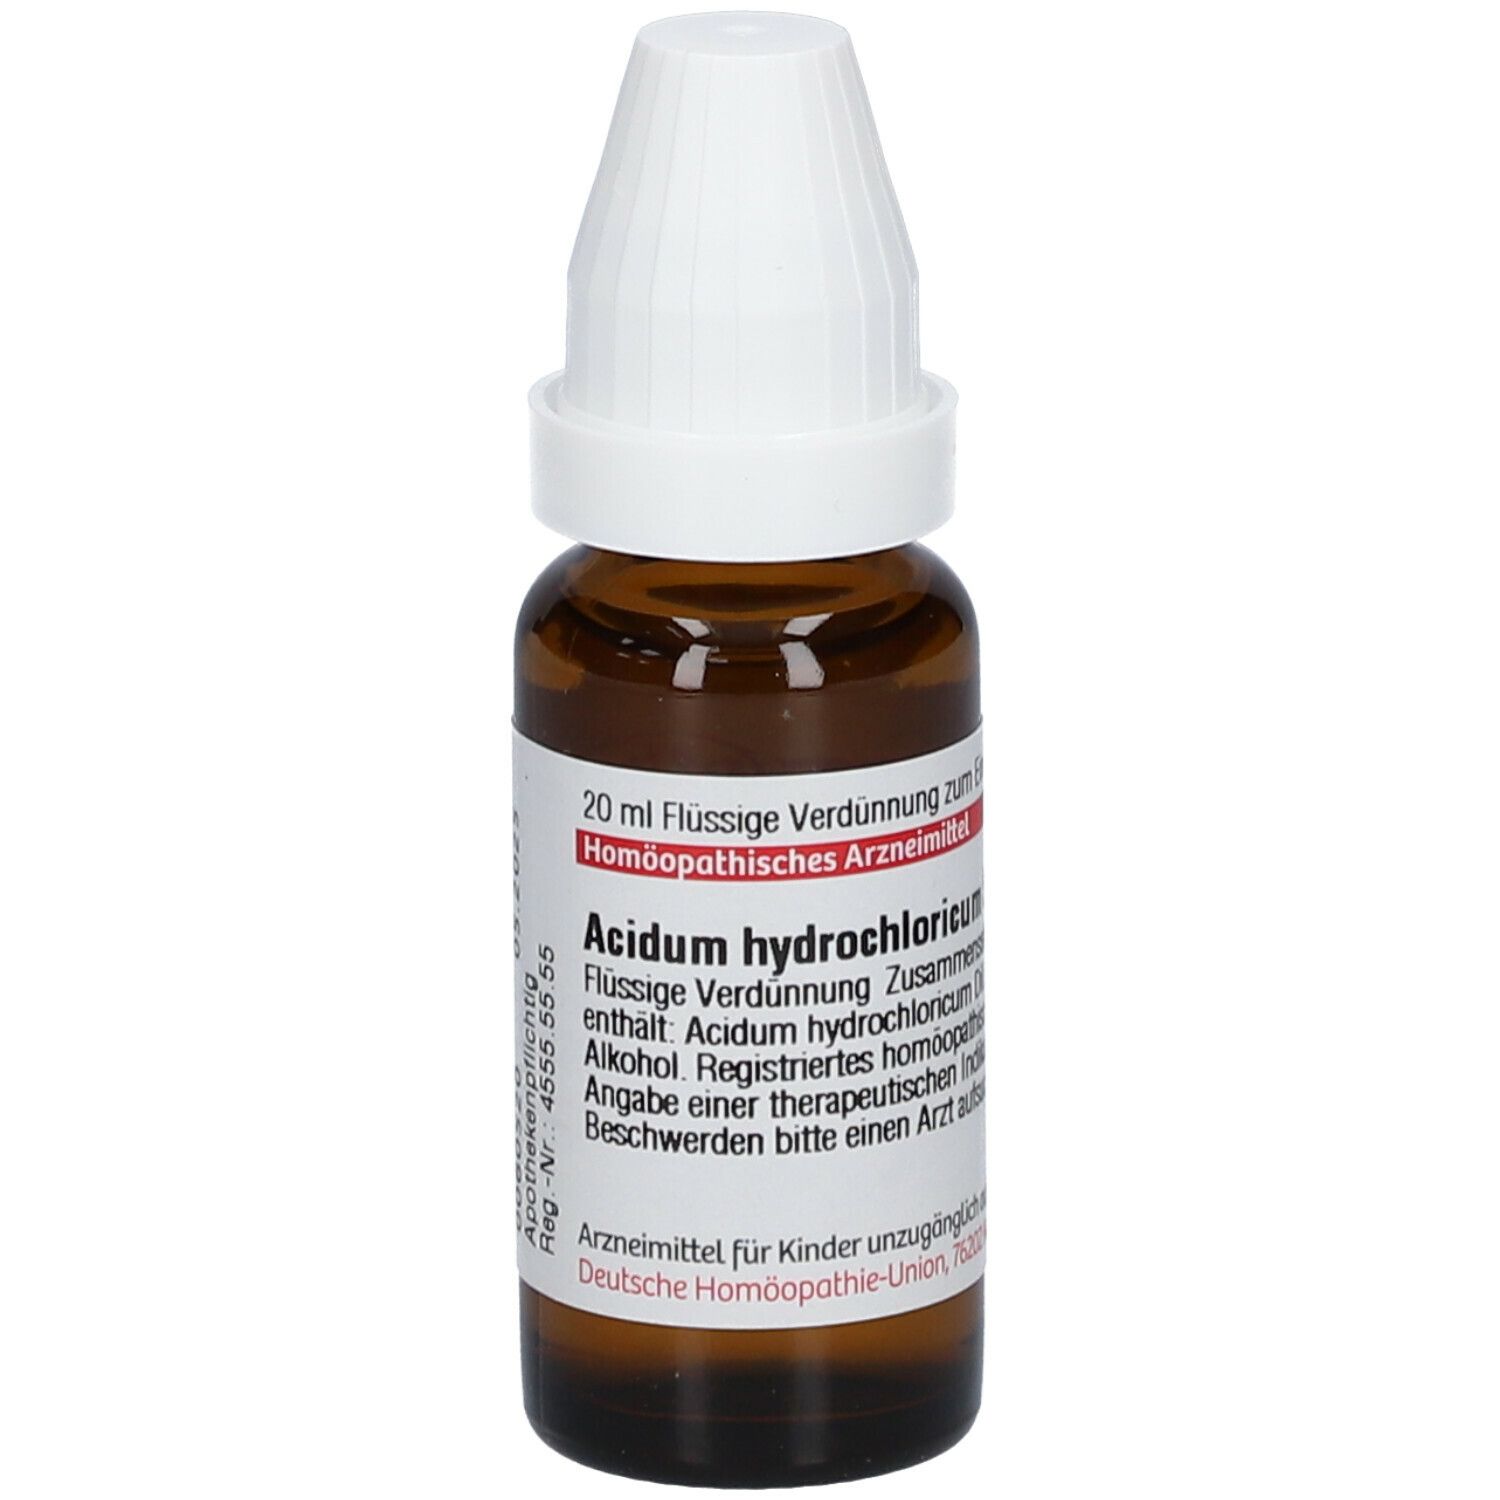 DHU Acidum Hydrochloricum D12